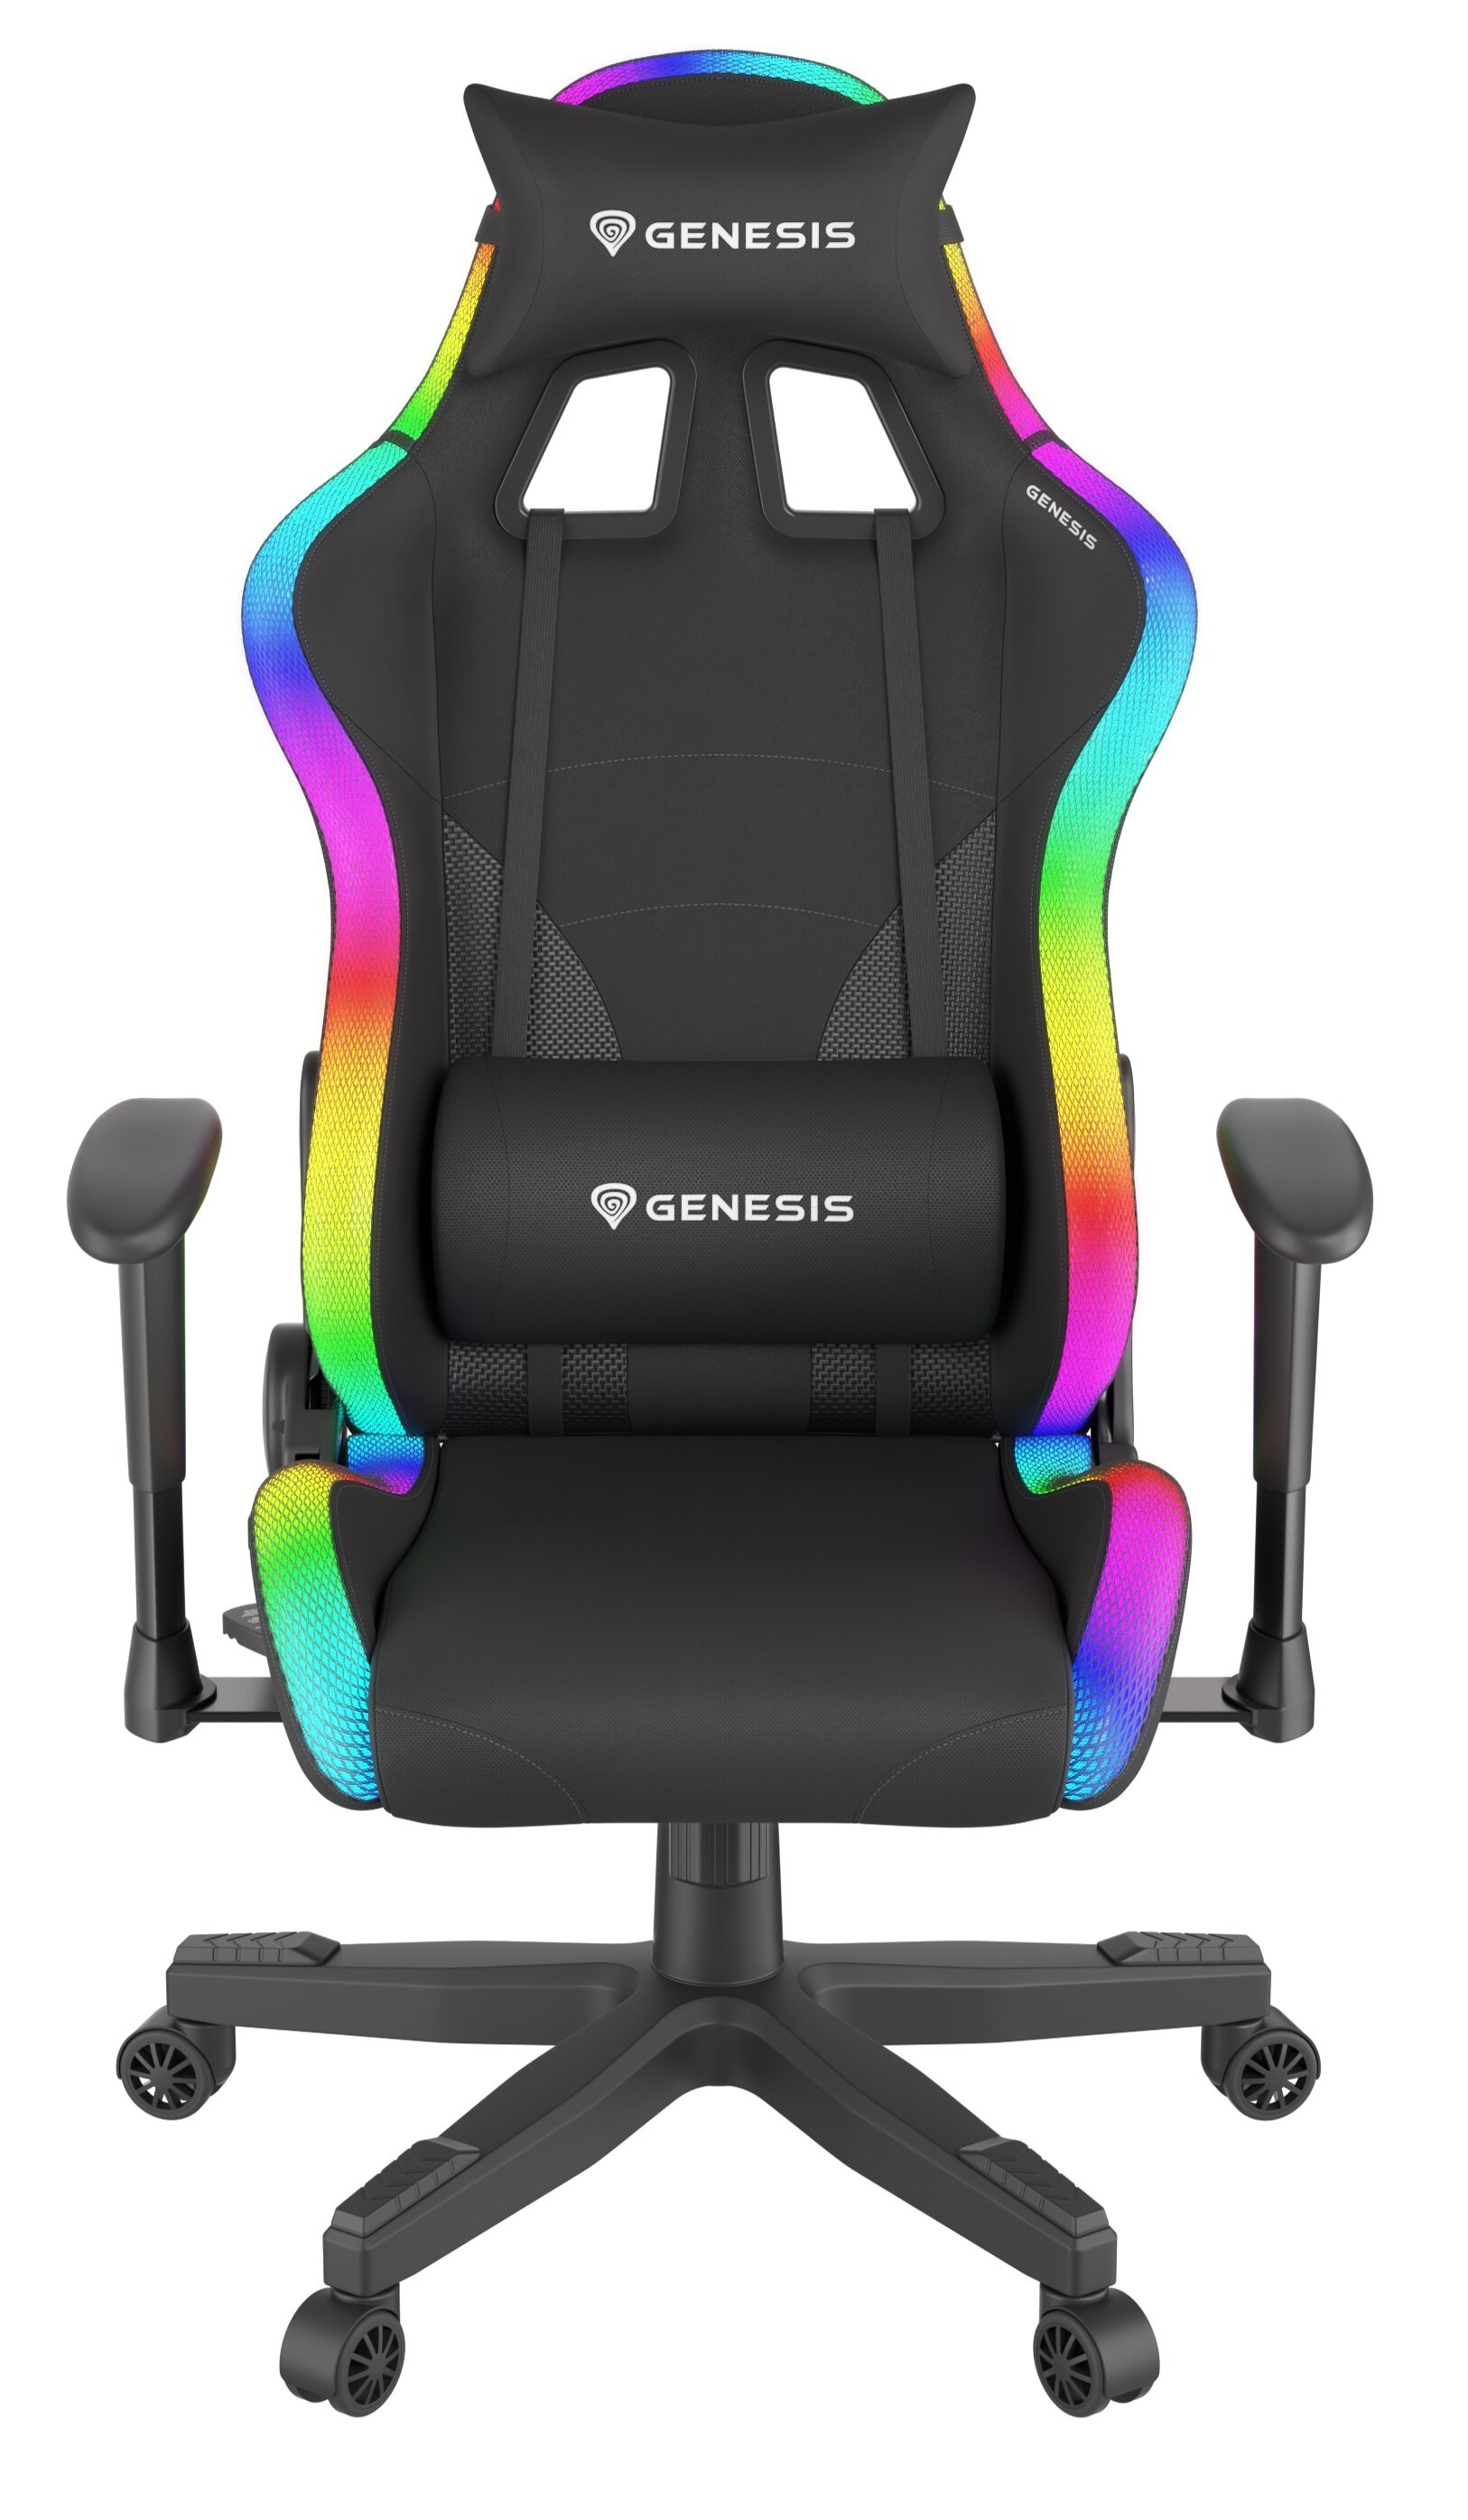 GENESIS Trit 600 RGB Czarny Fotel - niskie ceny i opinie w Media Expert